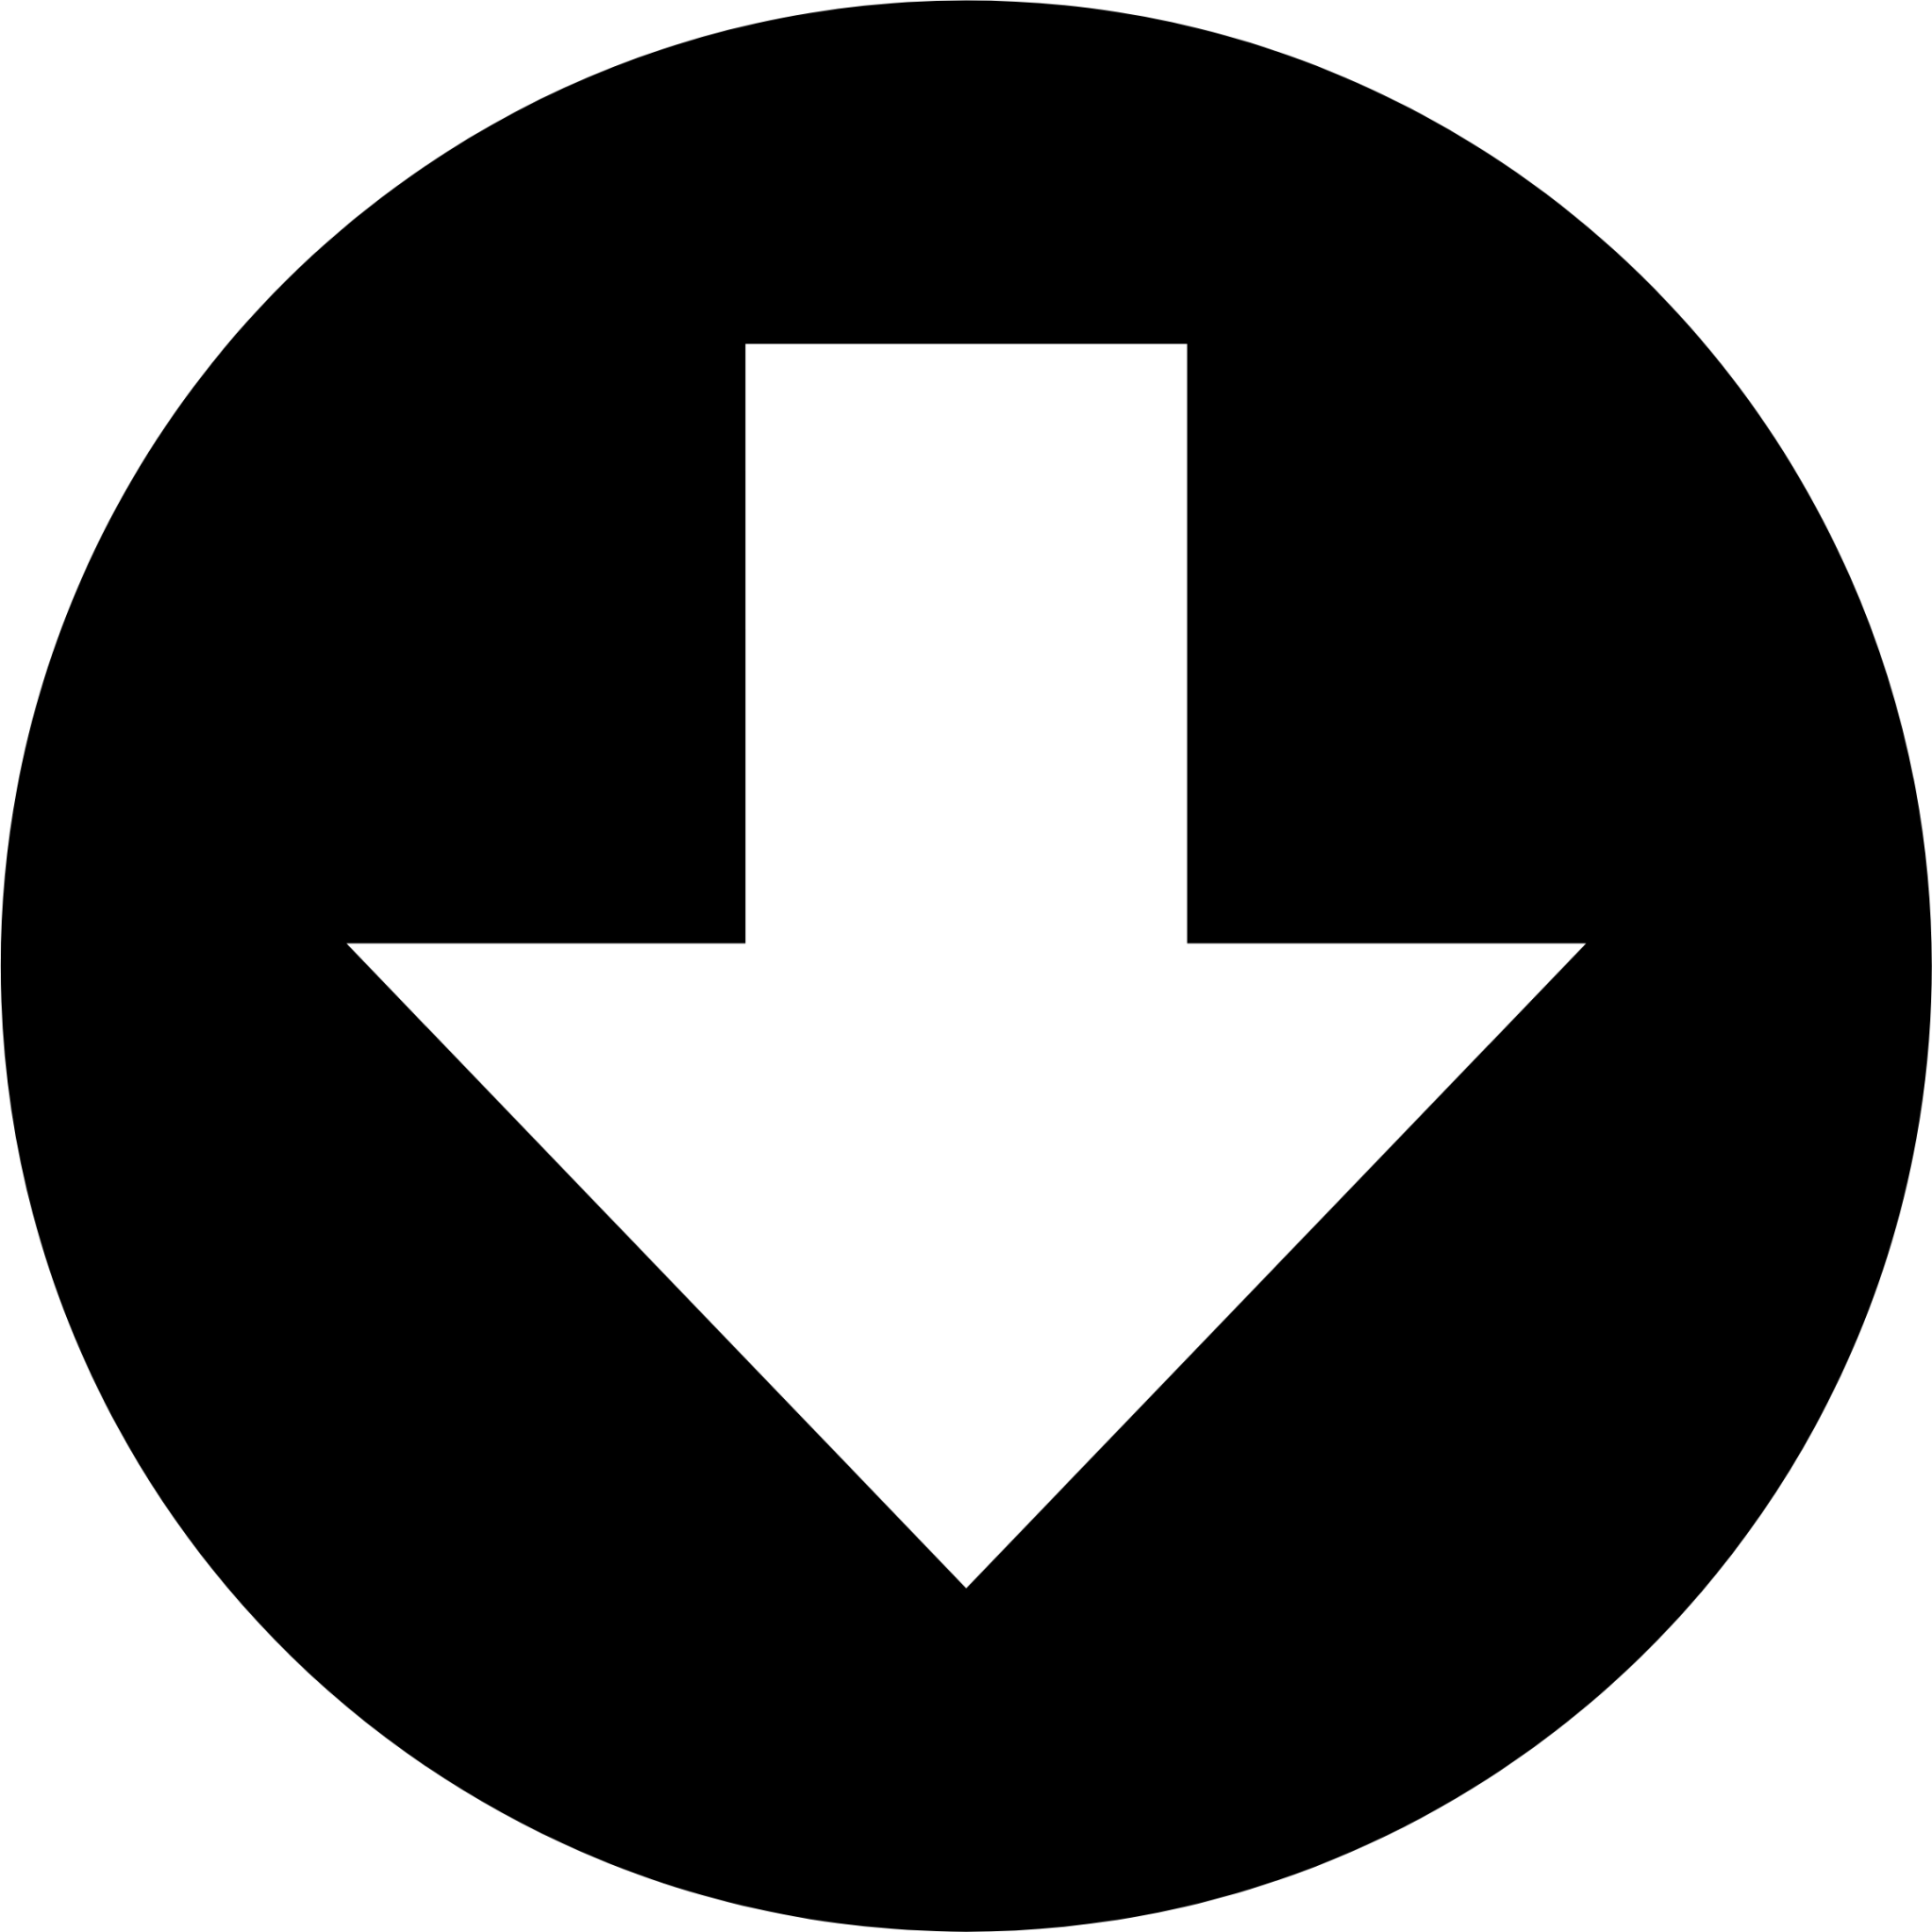 round black bottom arrow icon